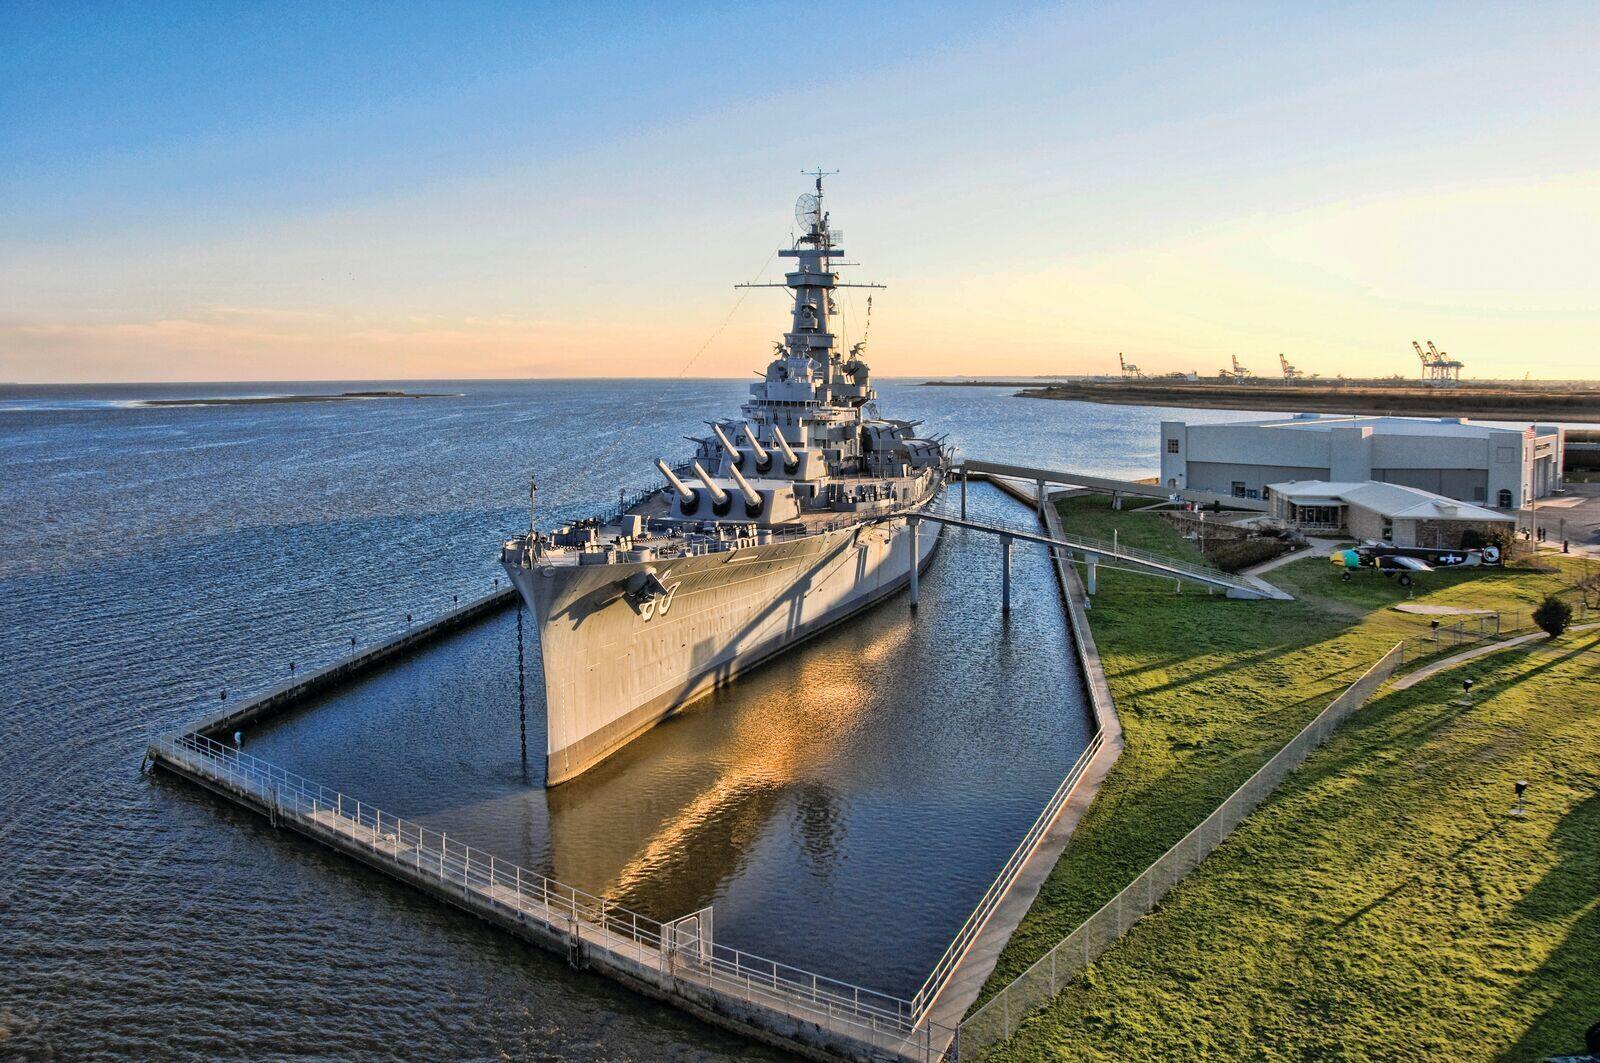 Pamätný park bitevnej lode USS ALABAMA